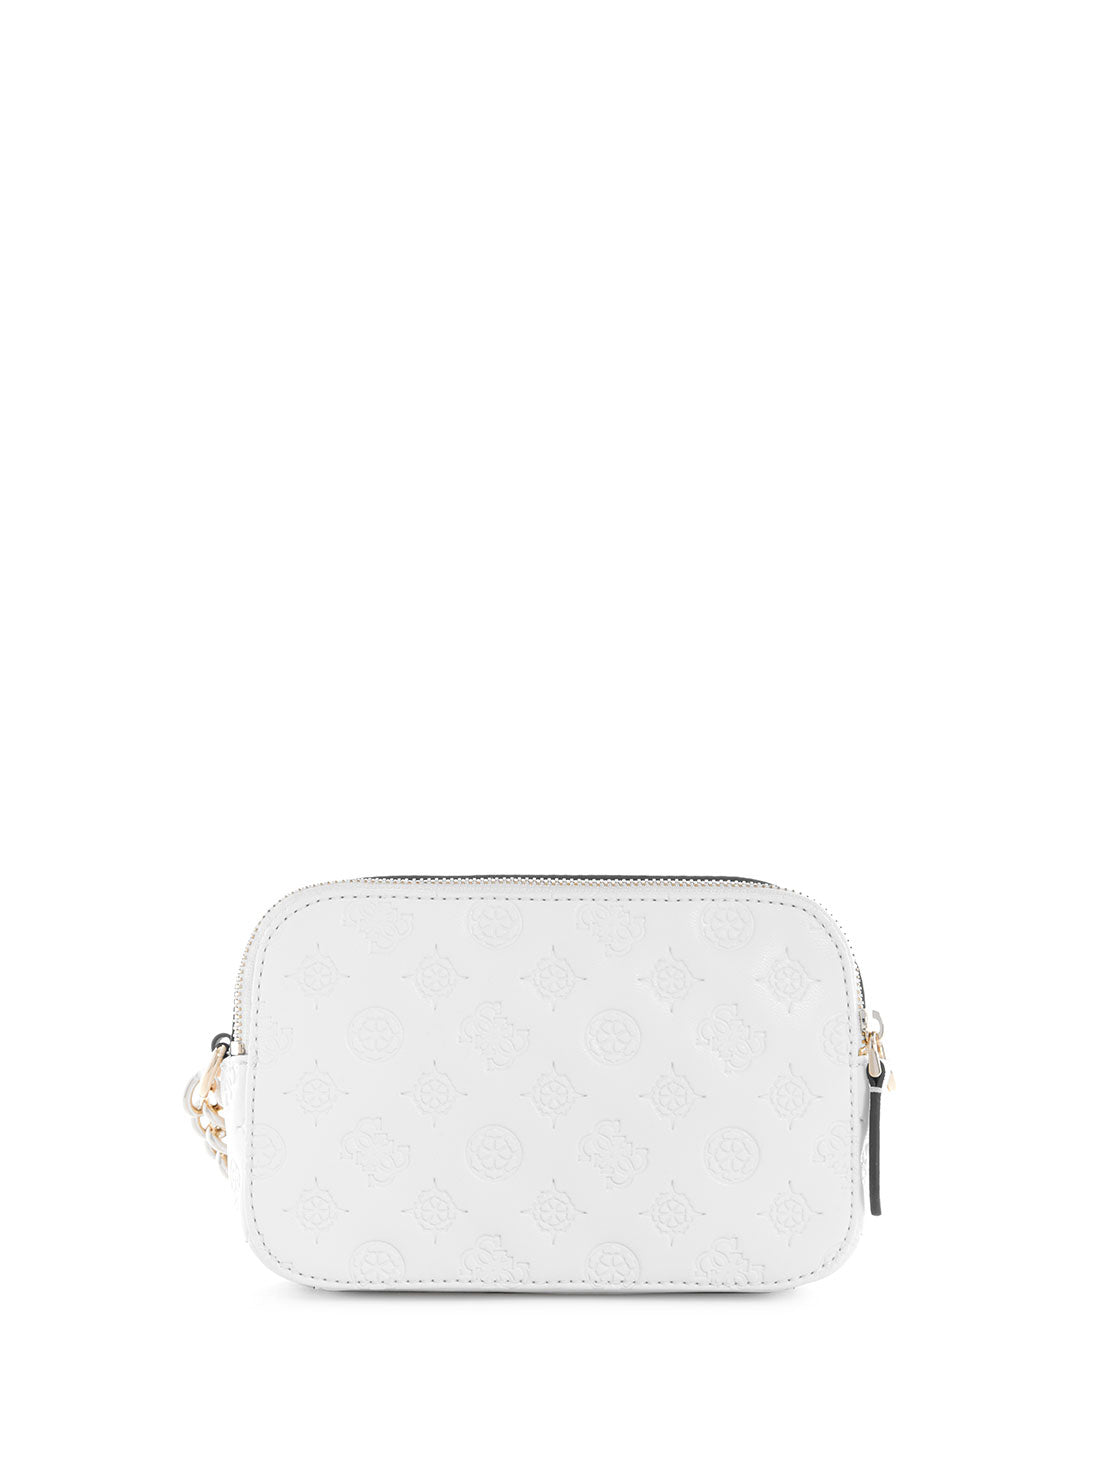 White La Femme Noelle Crossbody Bag